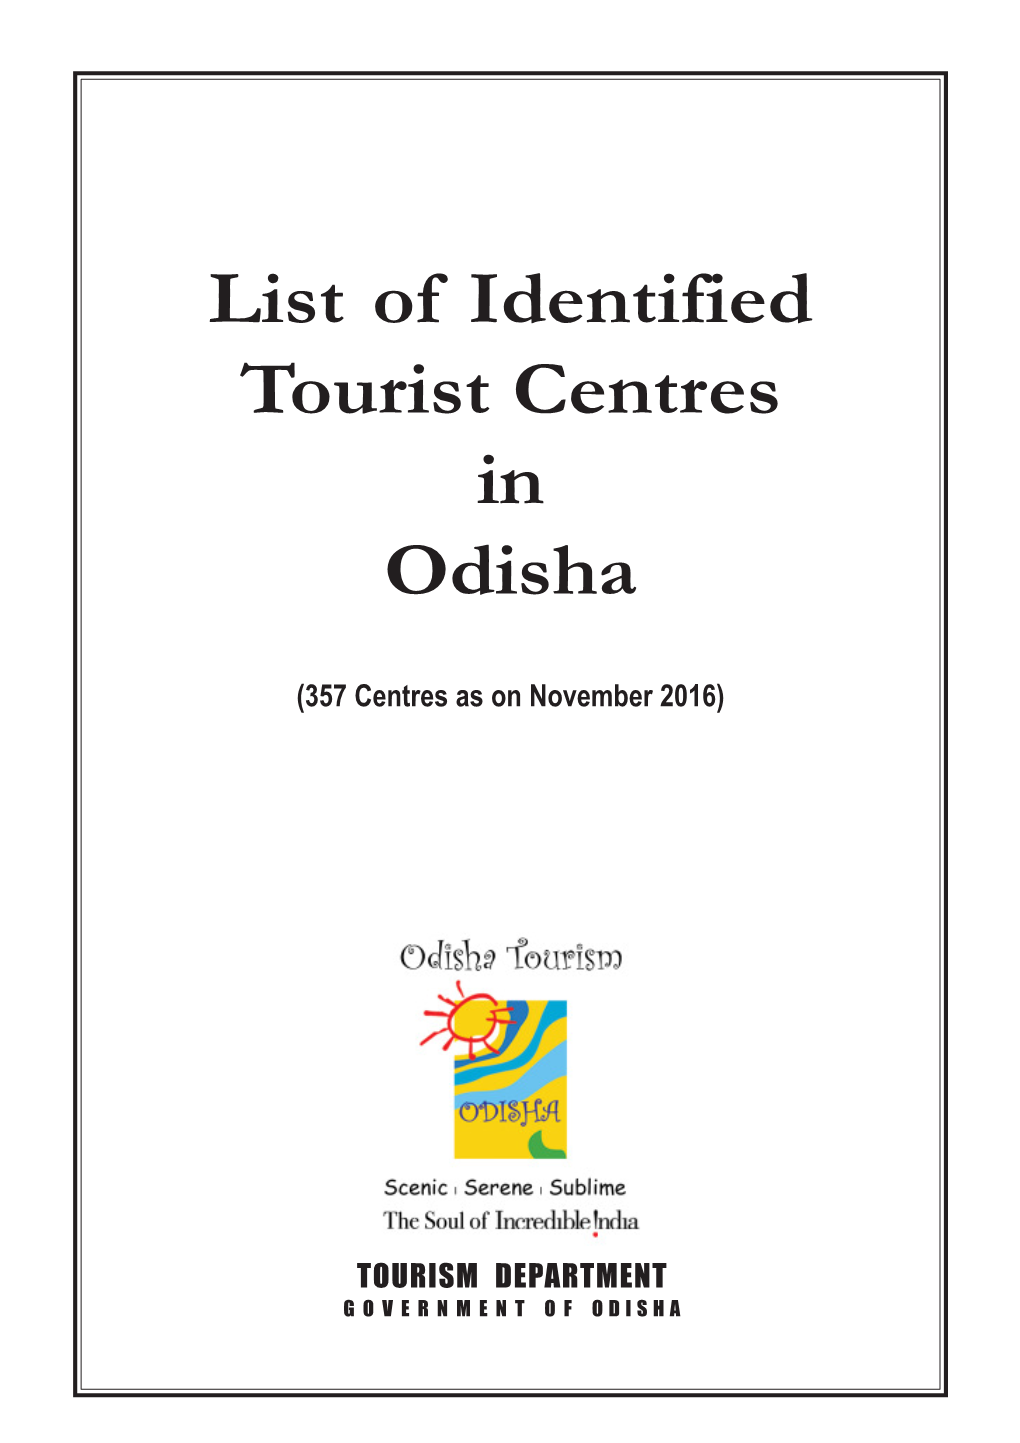 Identified Tourist Centre in Odisha